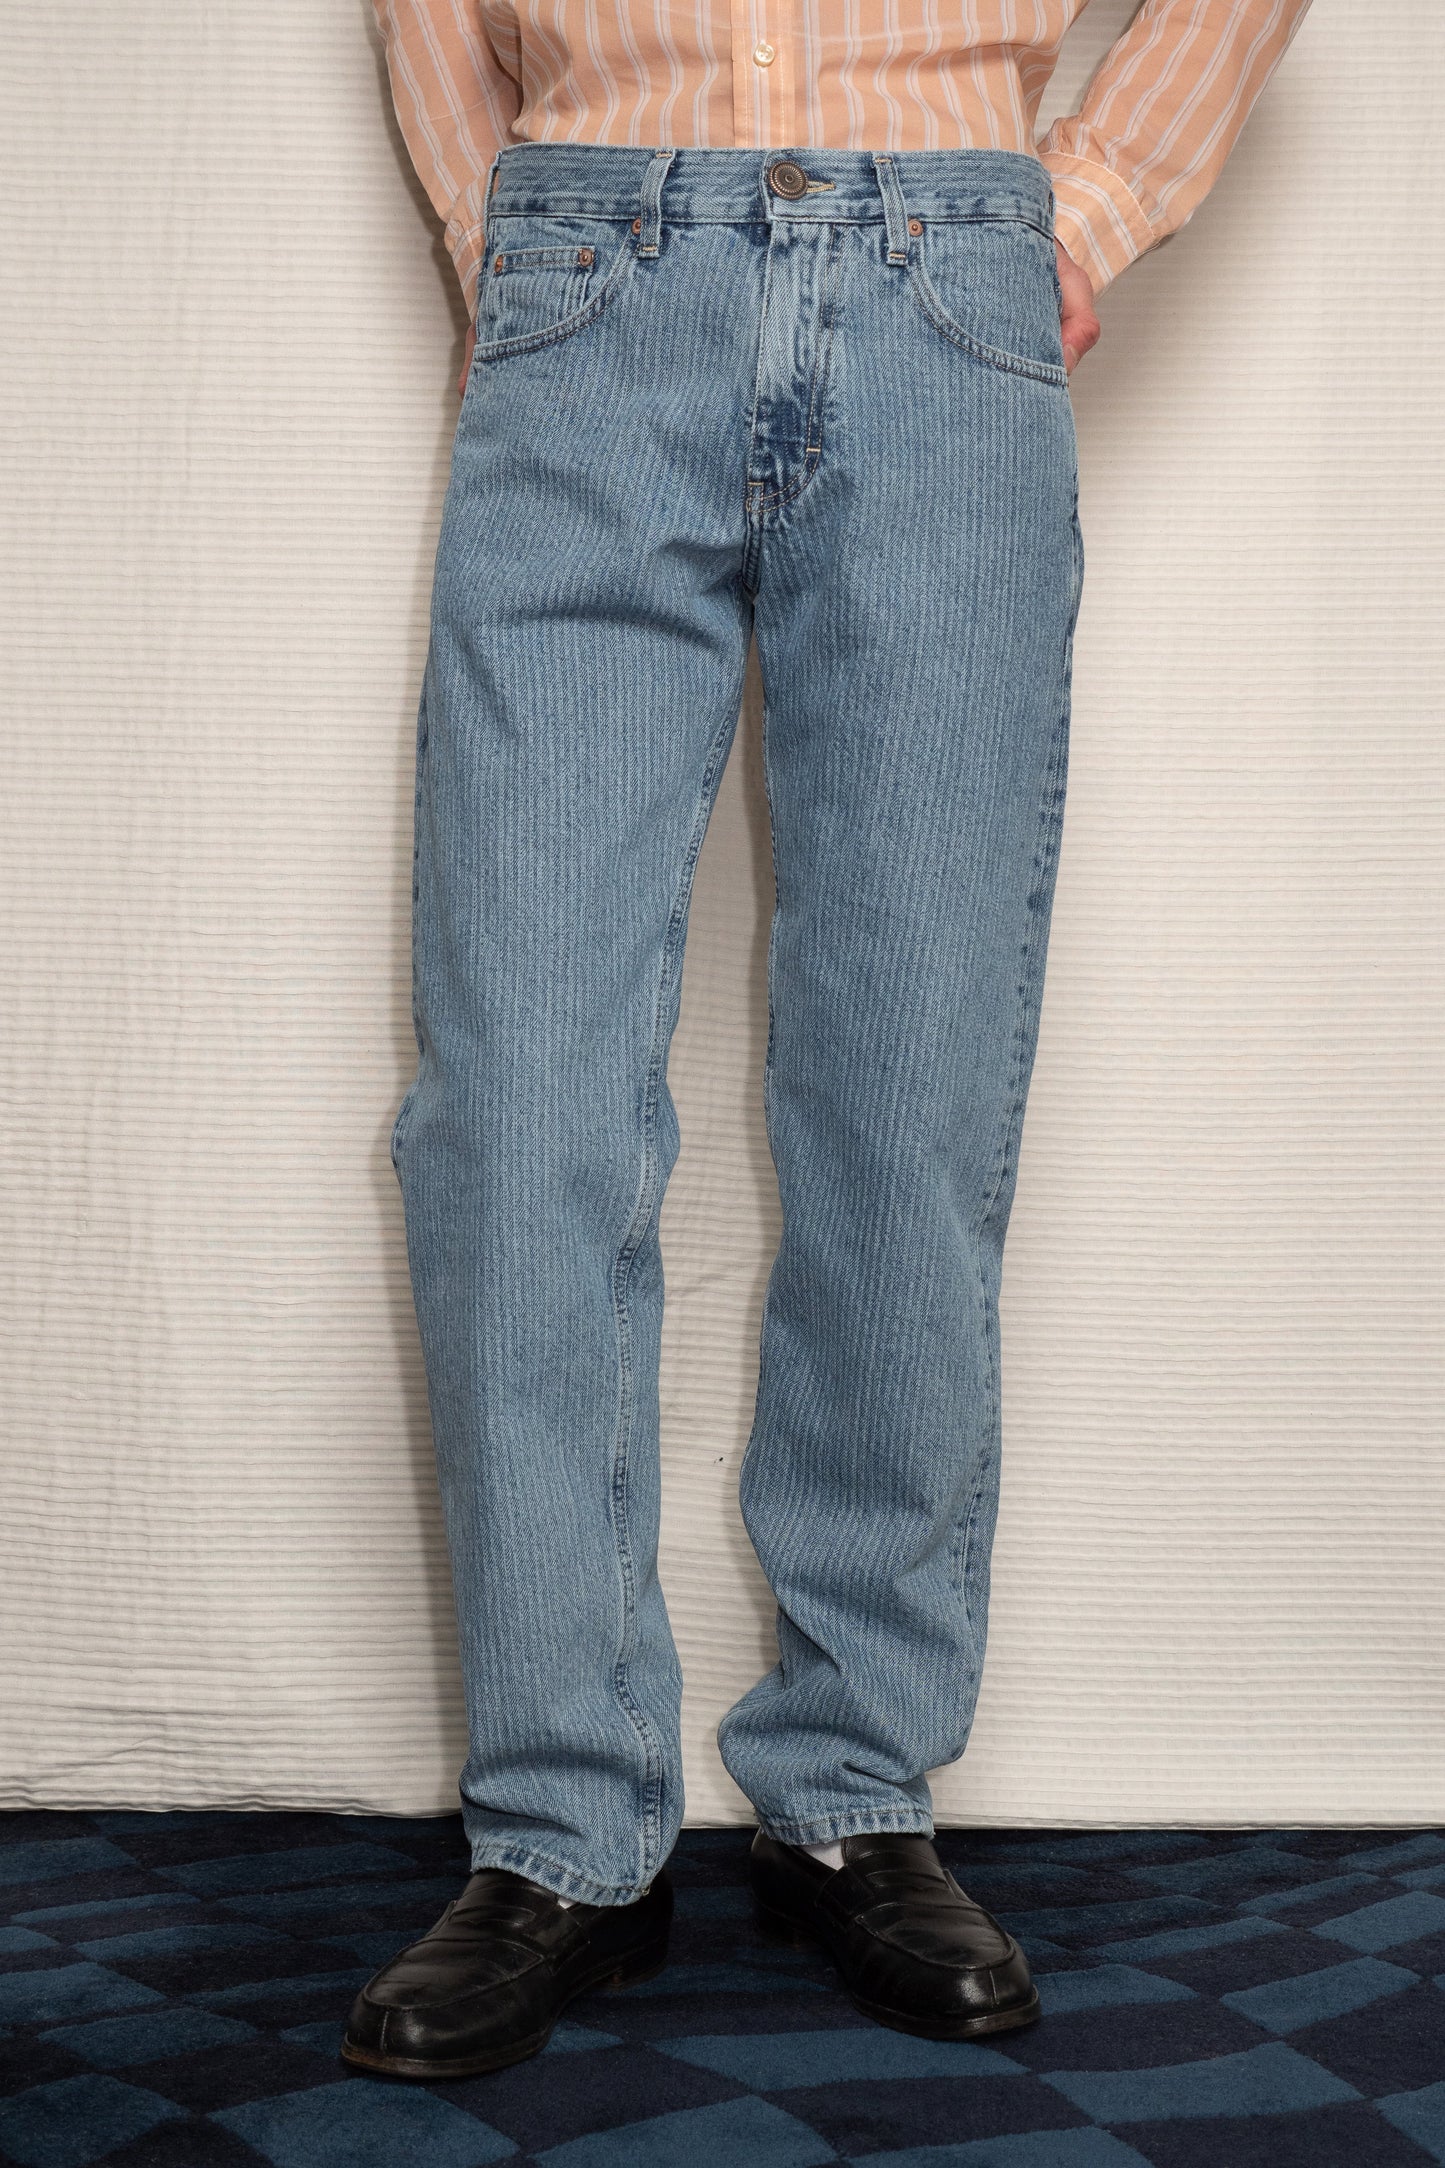 Le jean pour homme Erevan, jambe droite et bouton signature, denim japonais. Fabriqué en France. A retrouver dans nos boutiques de Saint Tropez et Paris.